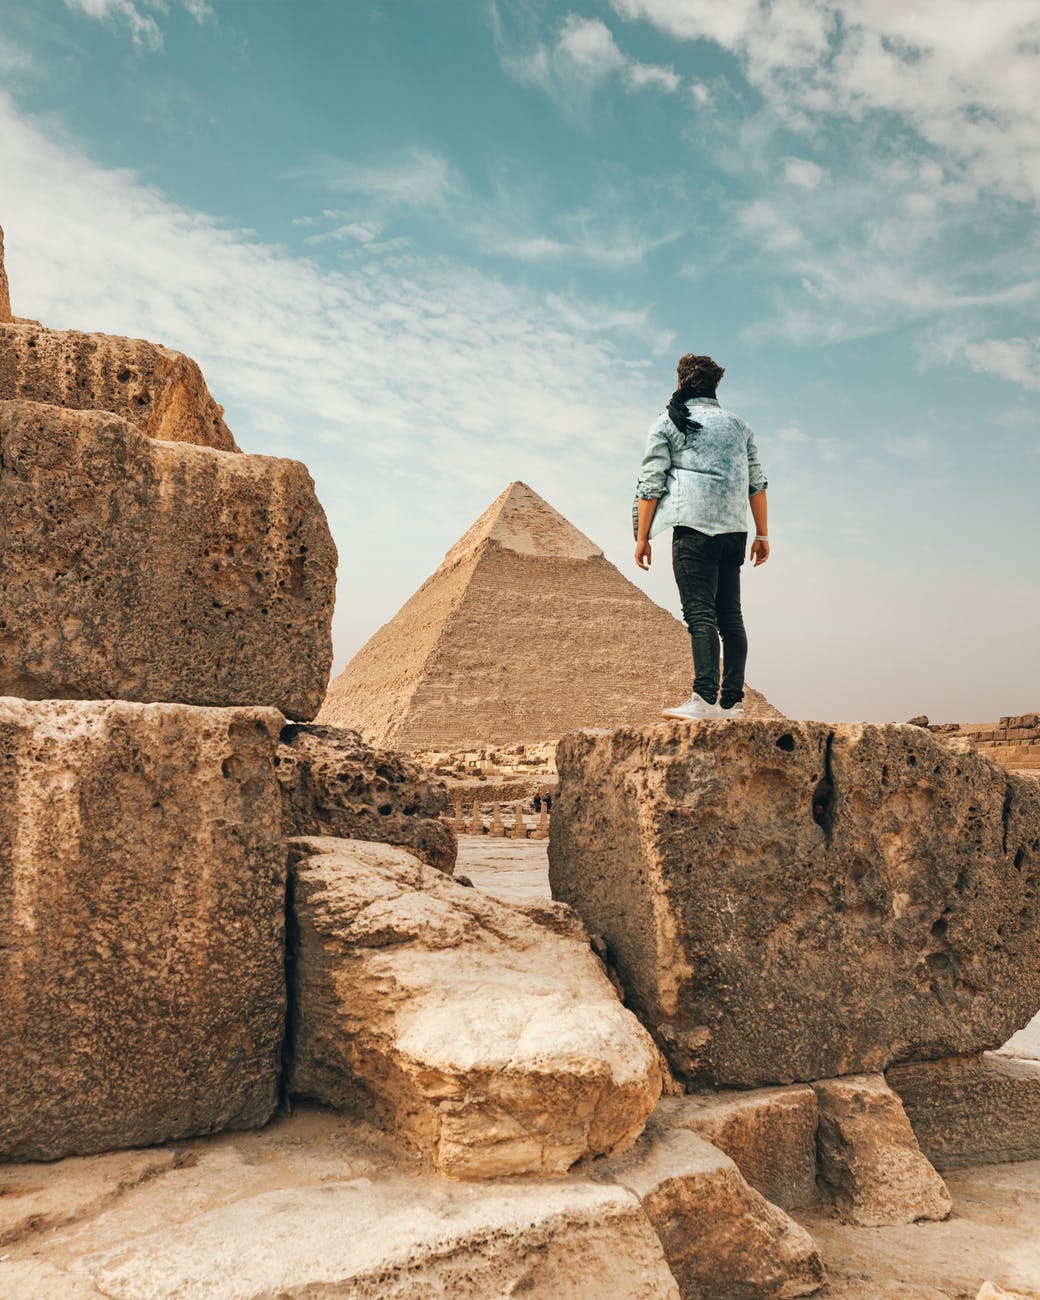 traveler standing on stone monument in desert